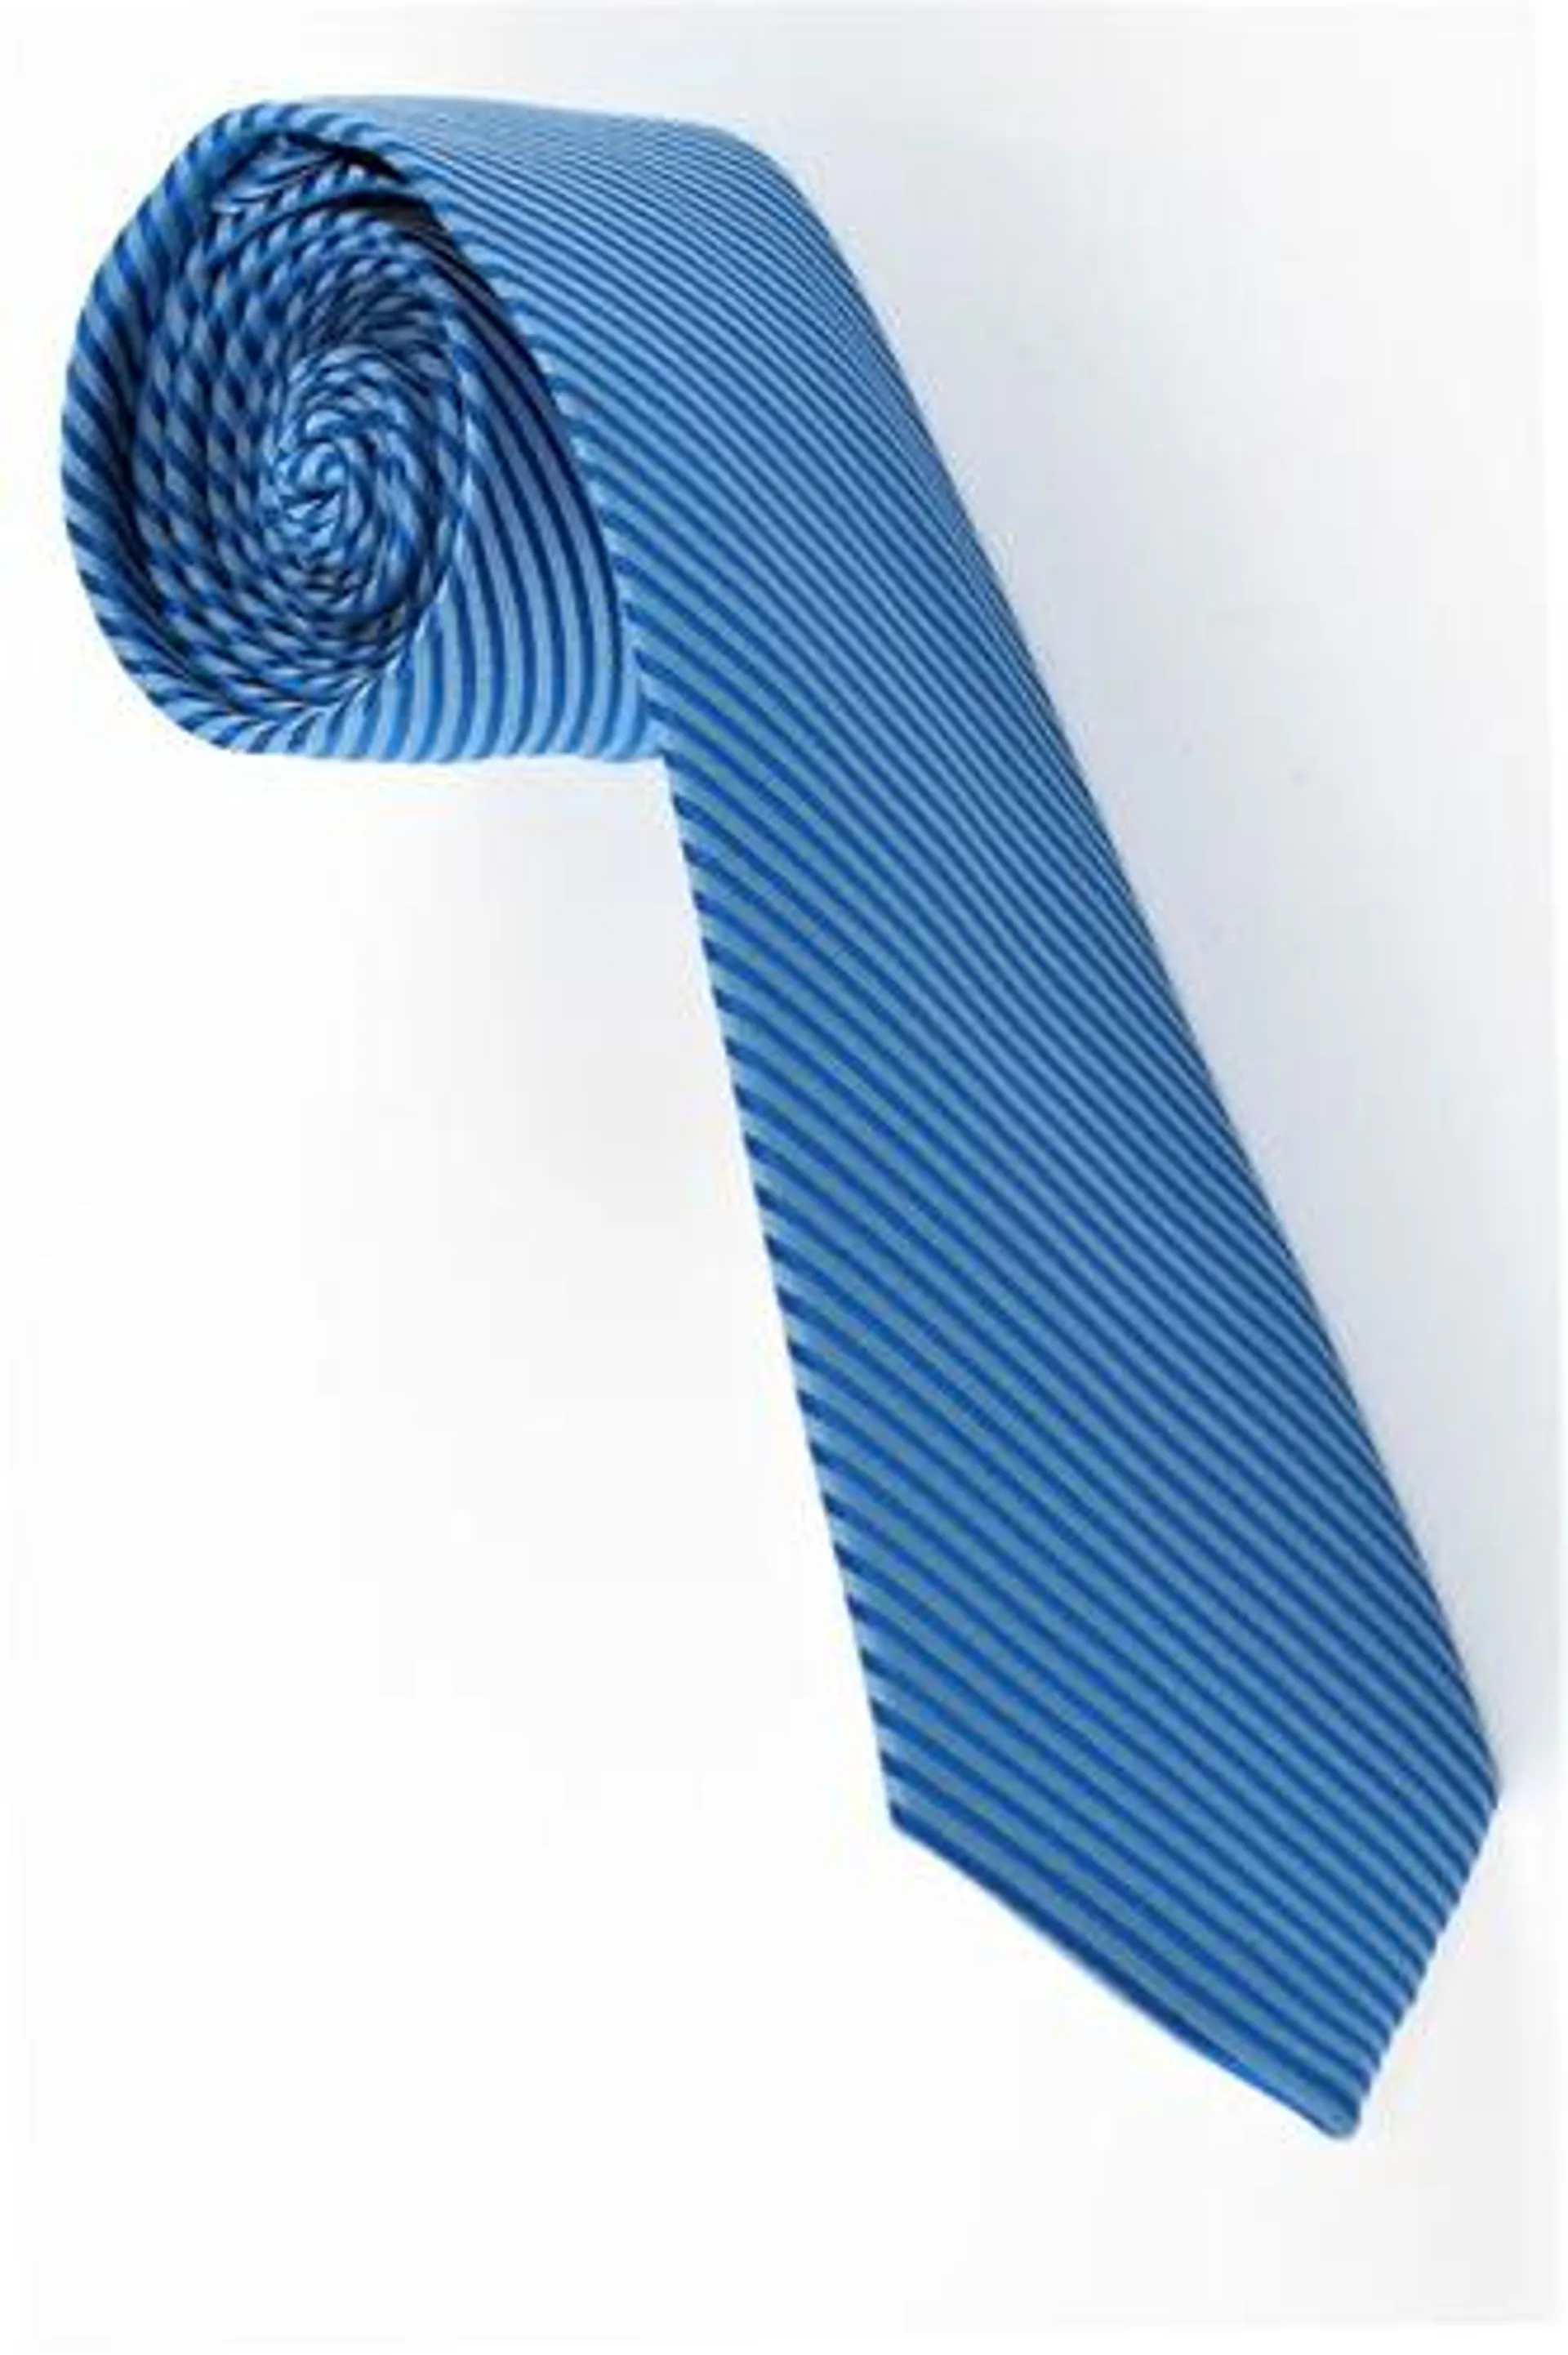 Corbata Semipitillo En Poliester Color Azul Textura Diagonal